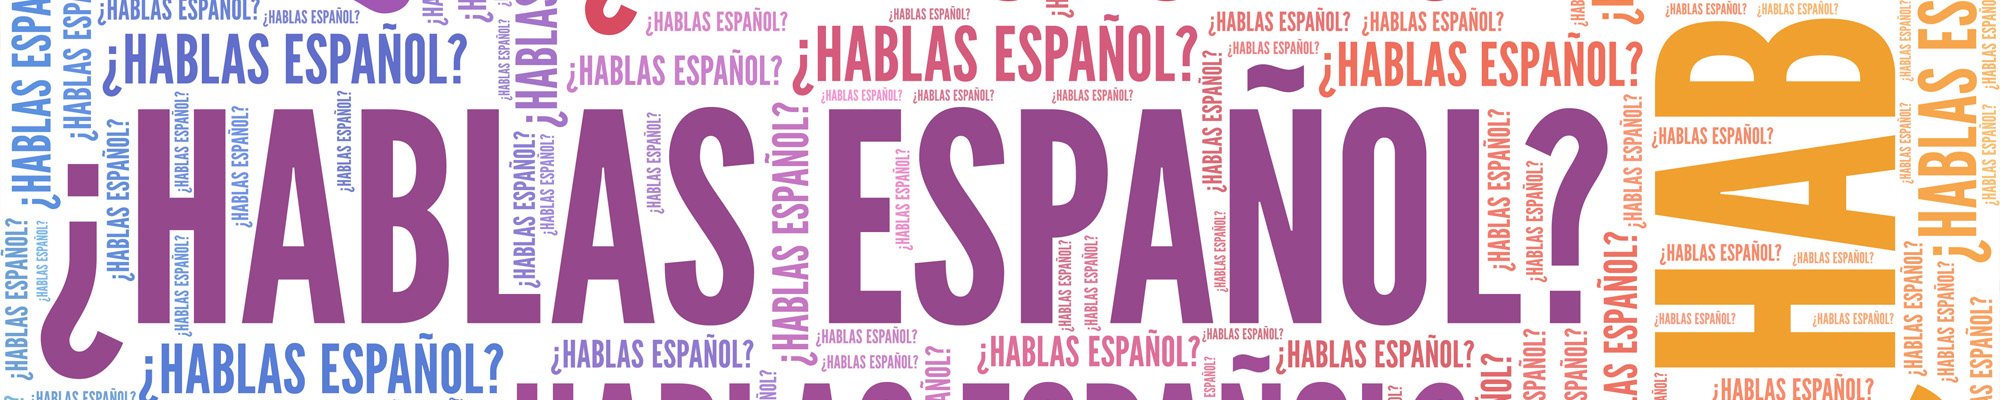 hablas espanol?